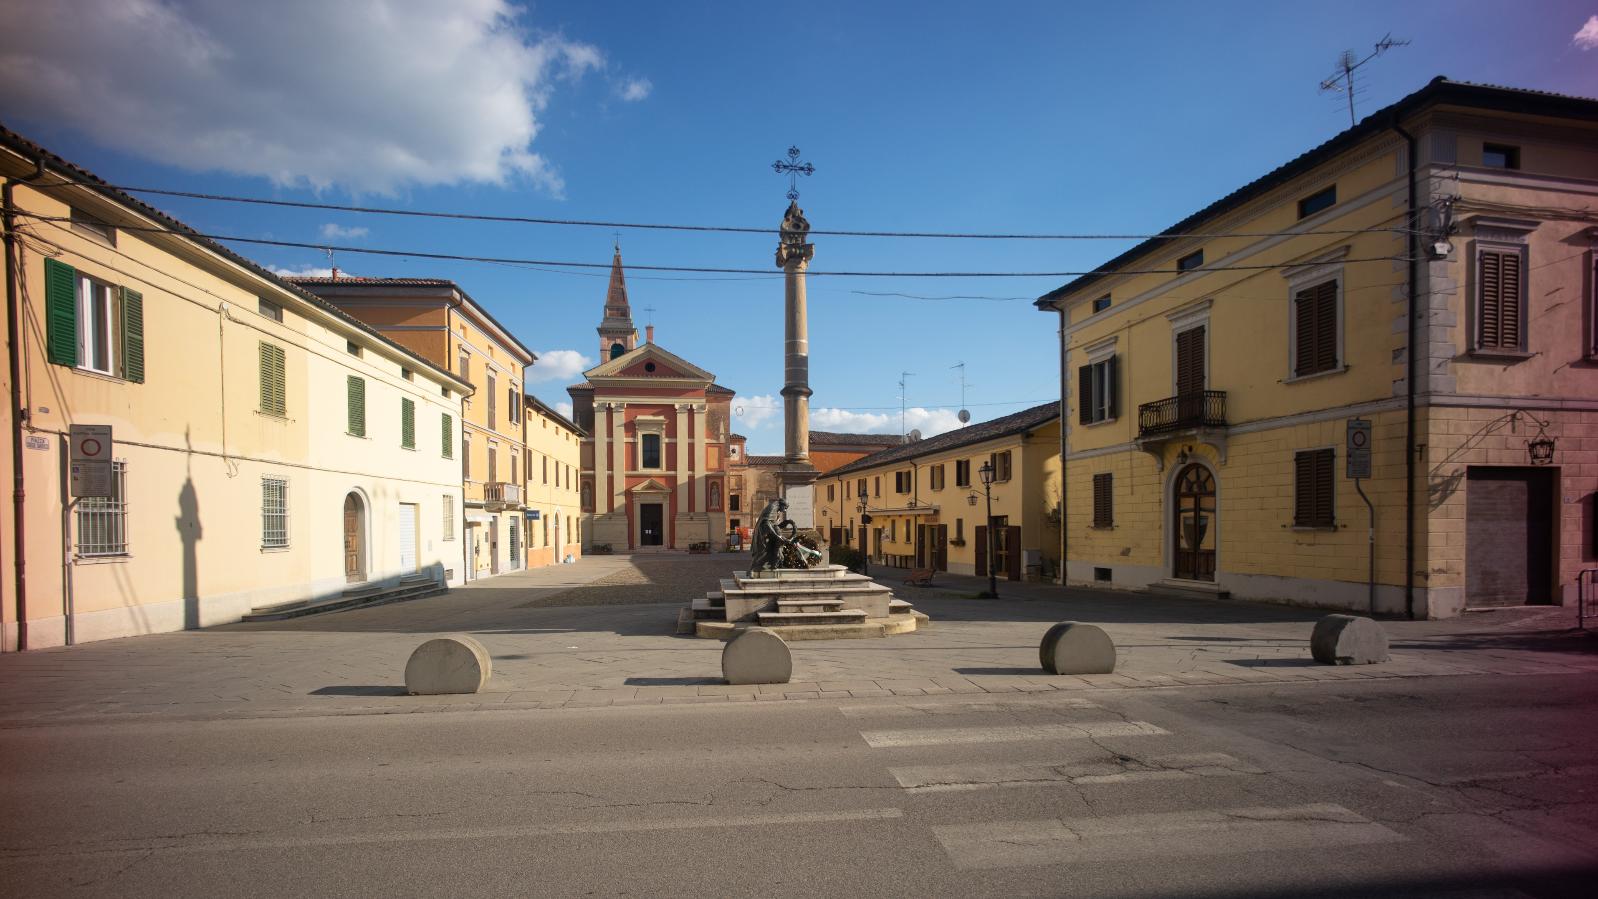 Piazza Carducci, Baricella - foto dell'archivio del comune di Baricella